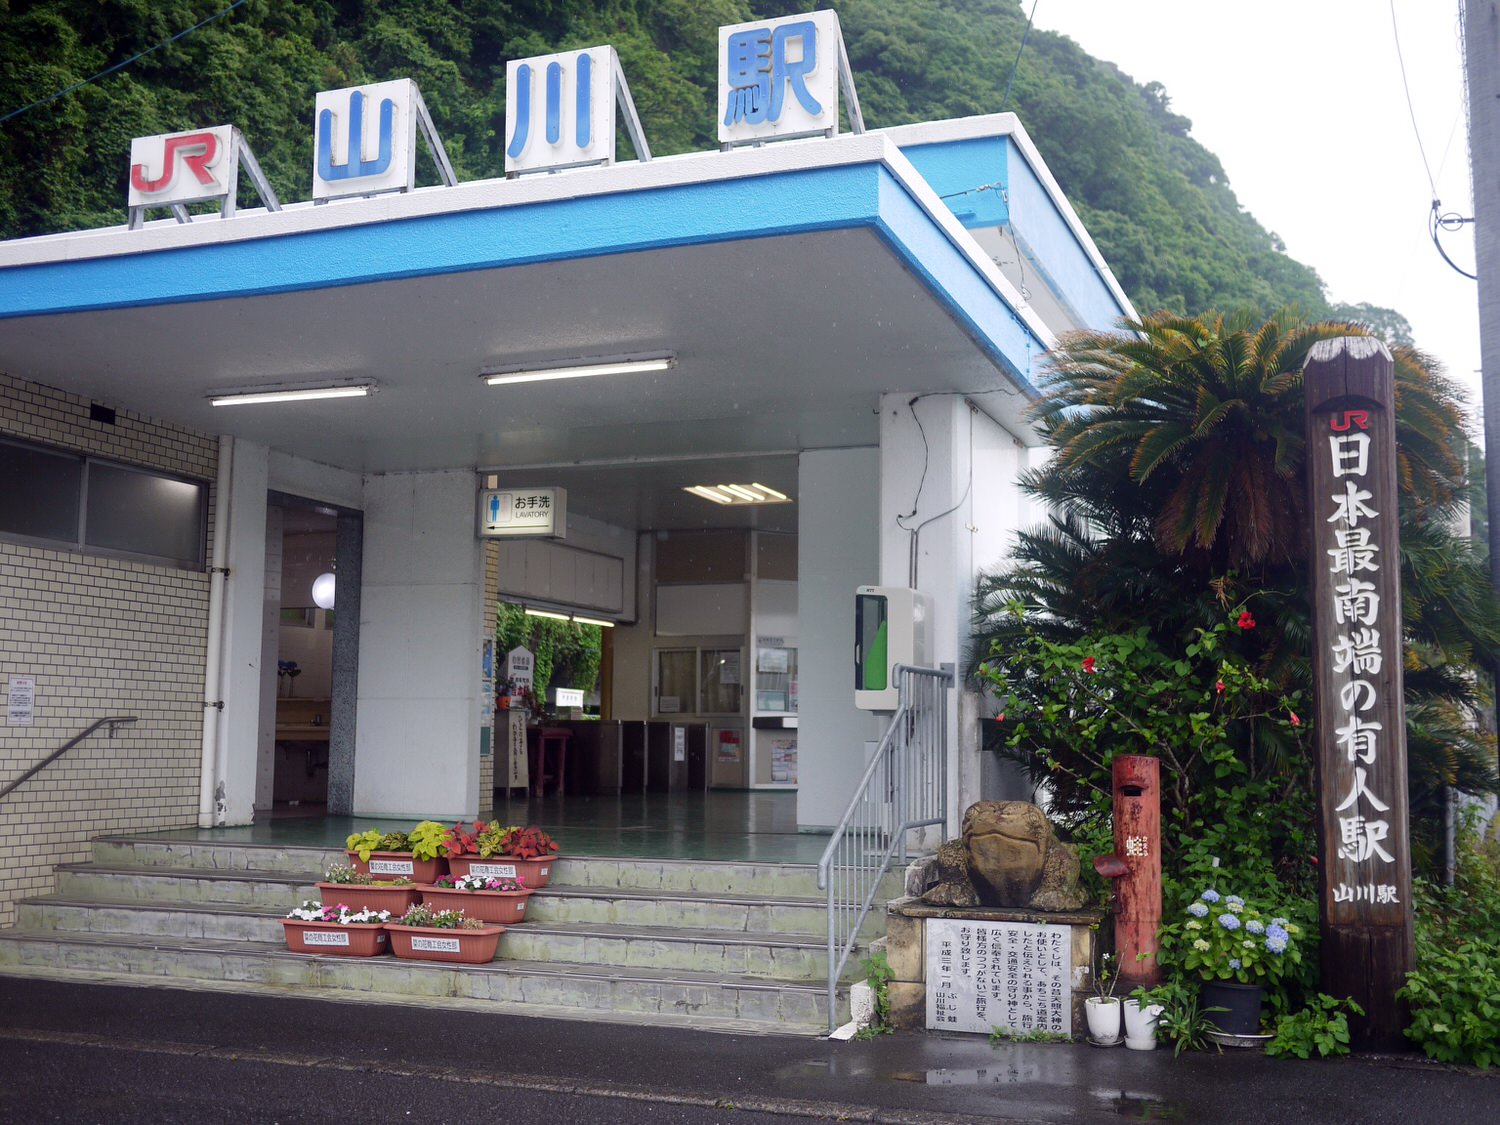 鹿兒島景點山川 日本JR最南端有人車站